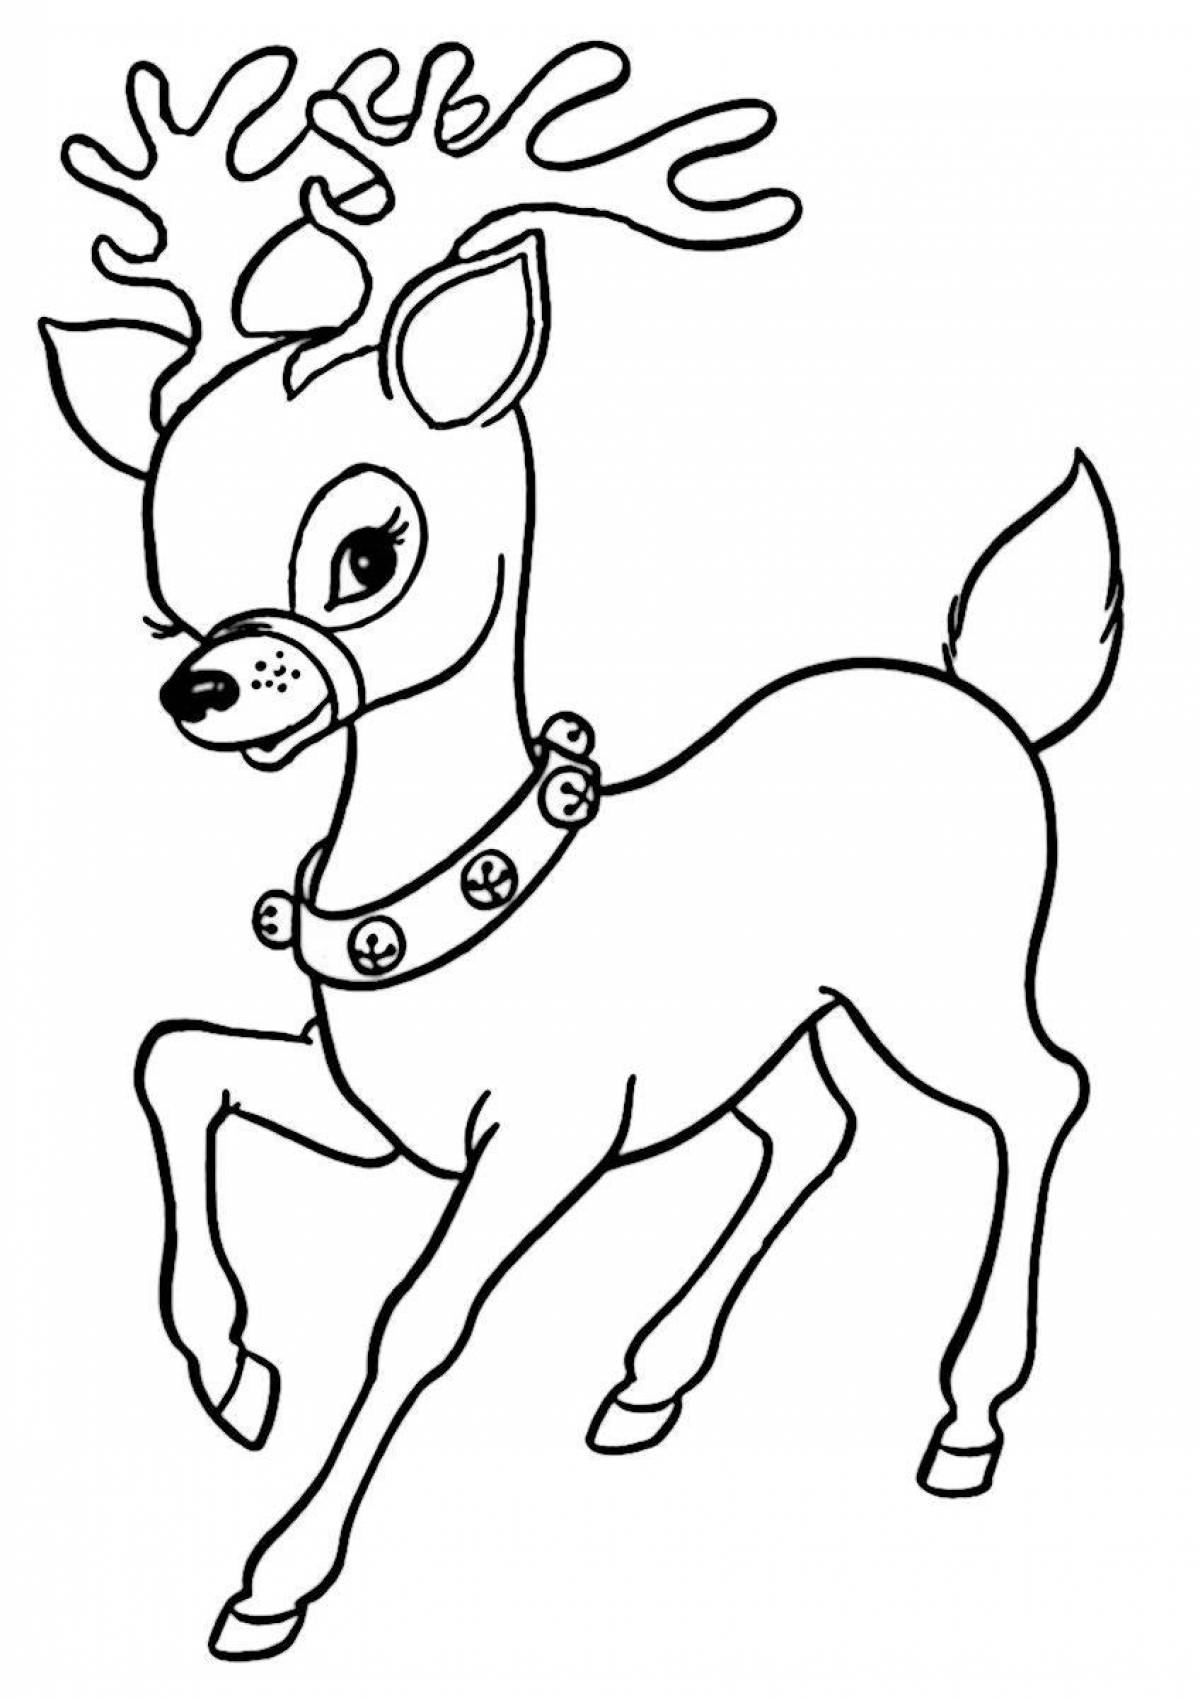 Wonderful drawing of a deer